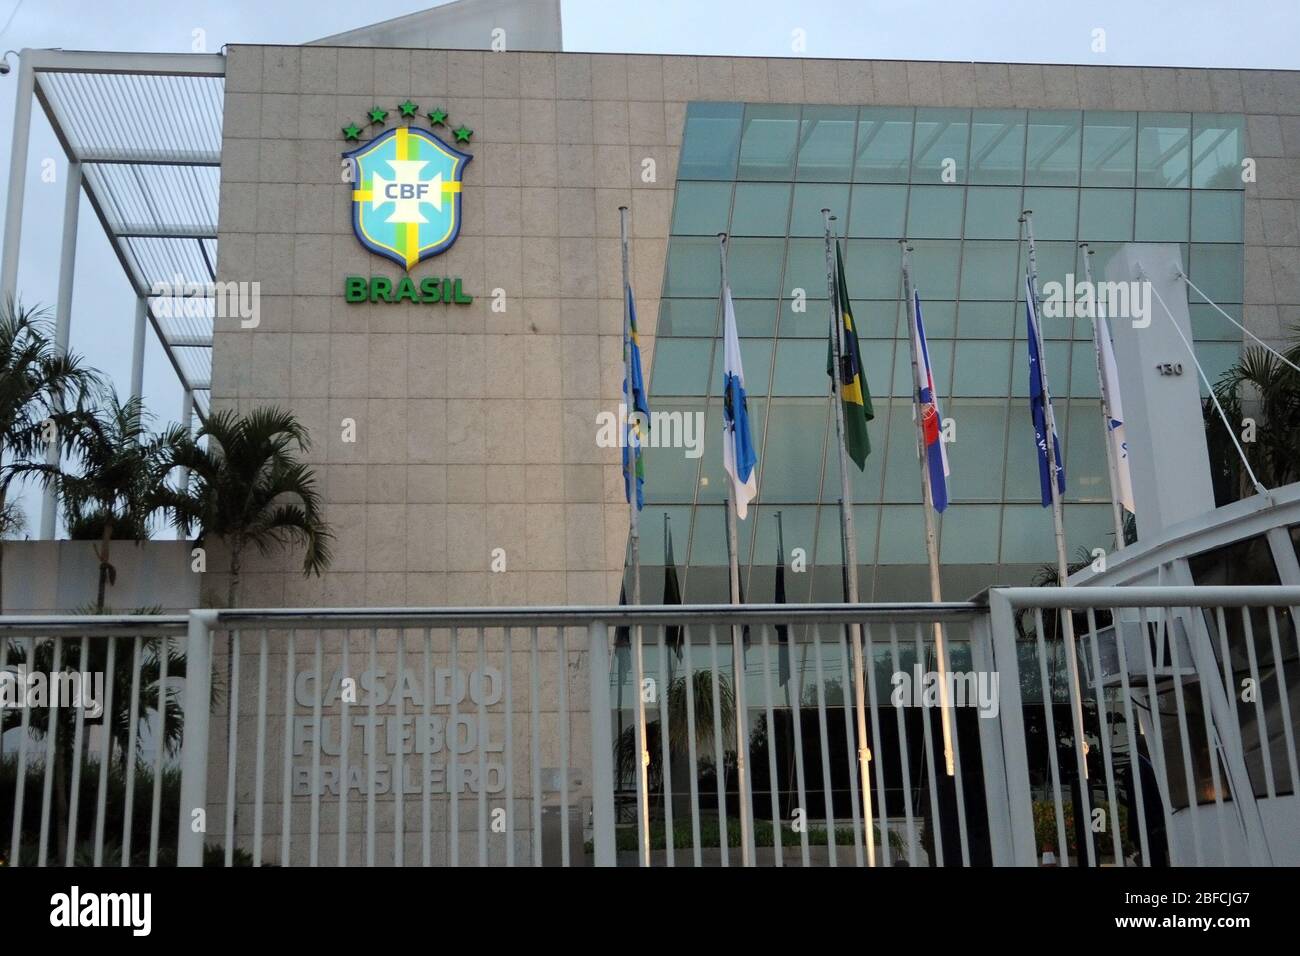 Rio de Janeiro, Brasile, 17 aprile 2020. Sede centrale CBF. La Confederazione di calcio brasiliana è la più alta entità di calcio in Brasile, situata in Foto Stock